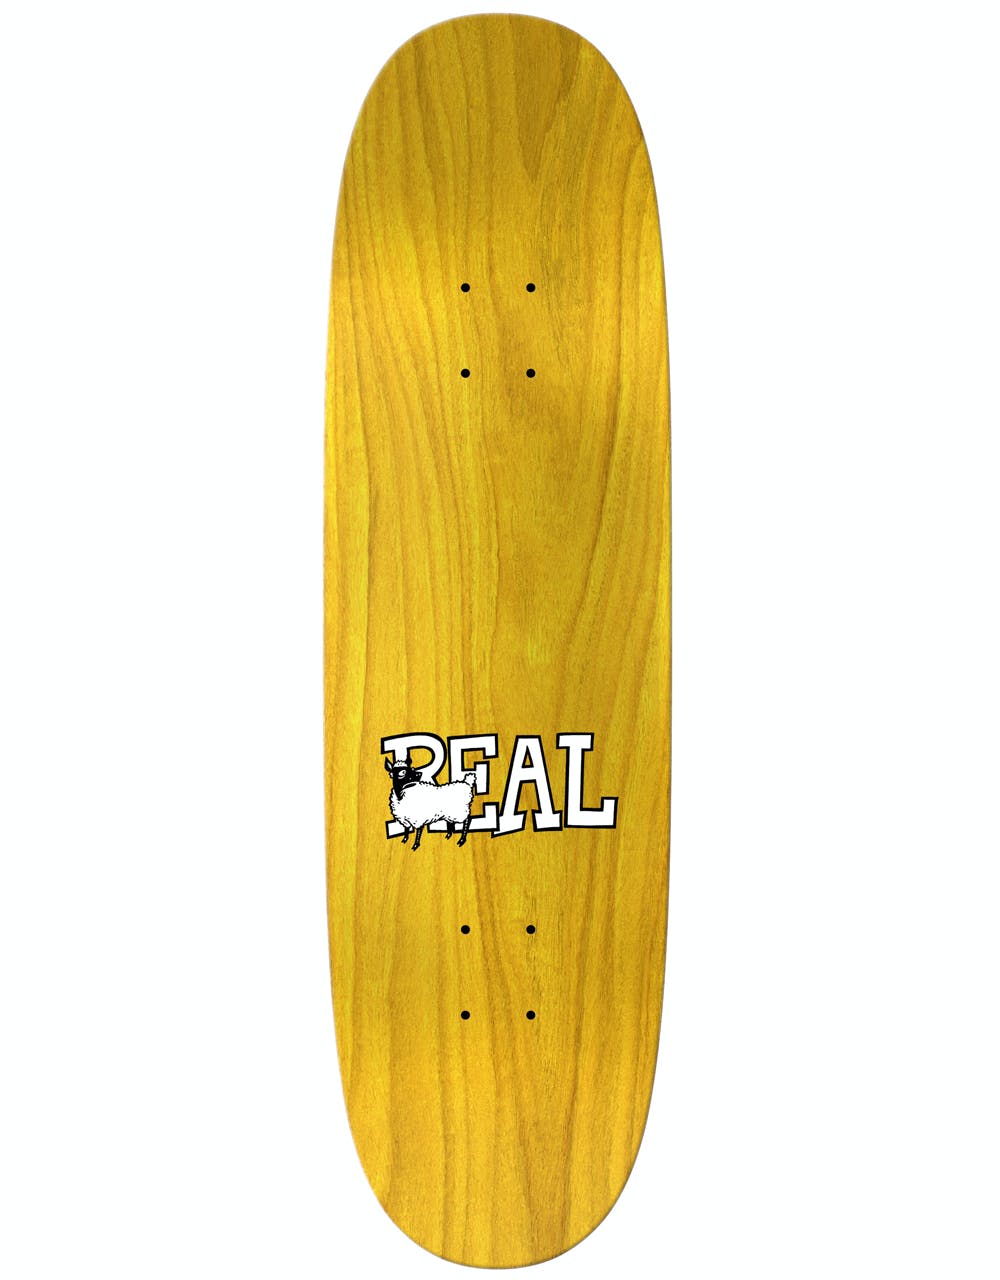 Real Kelch Twister Ltd Skateboard Deck - 8.75"